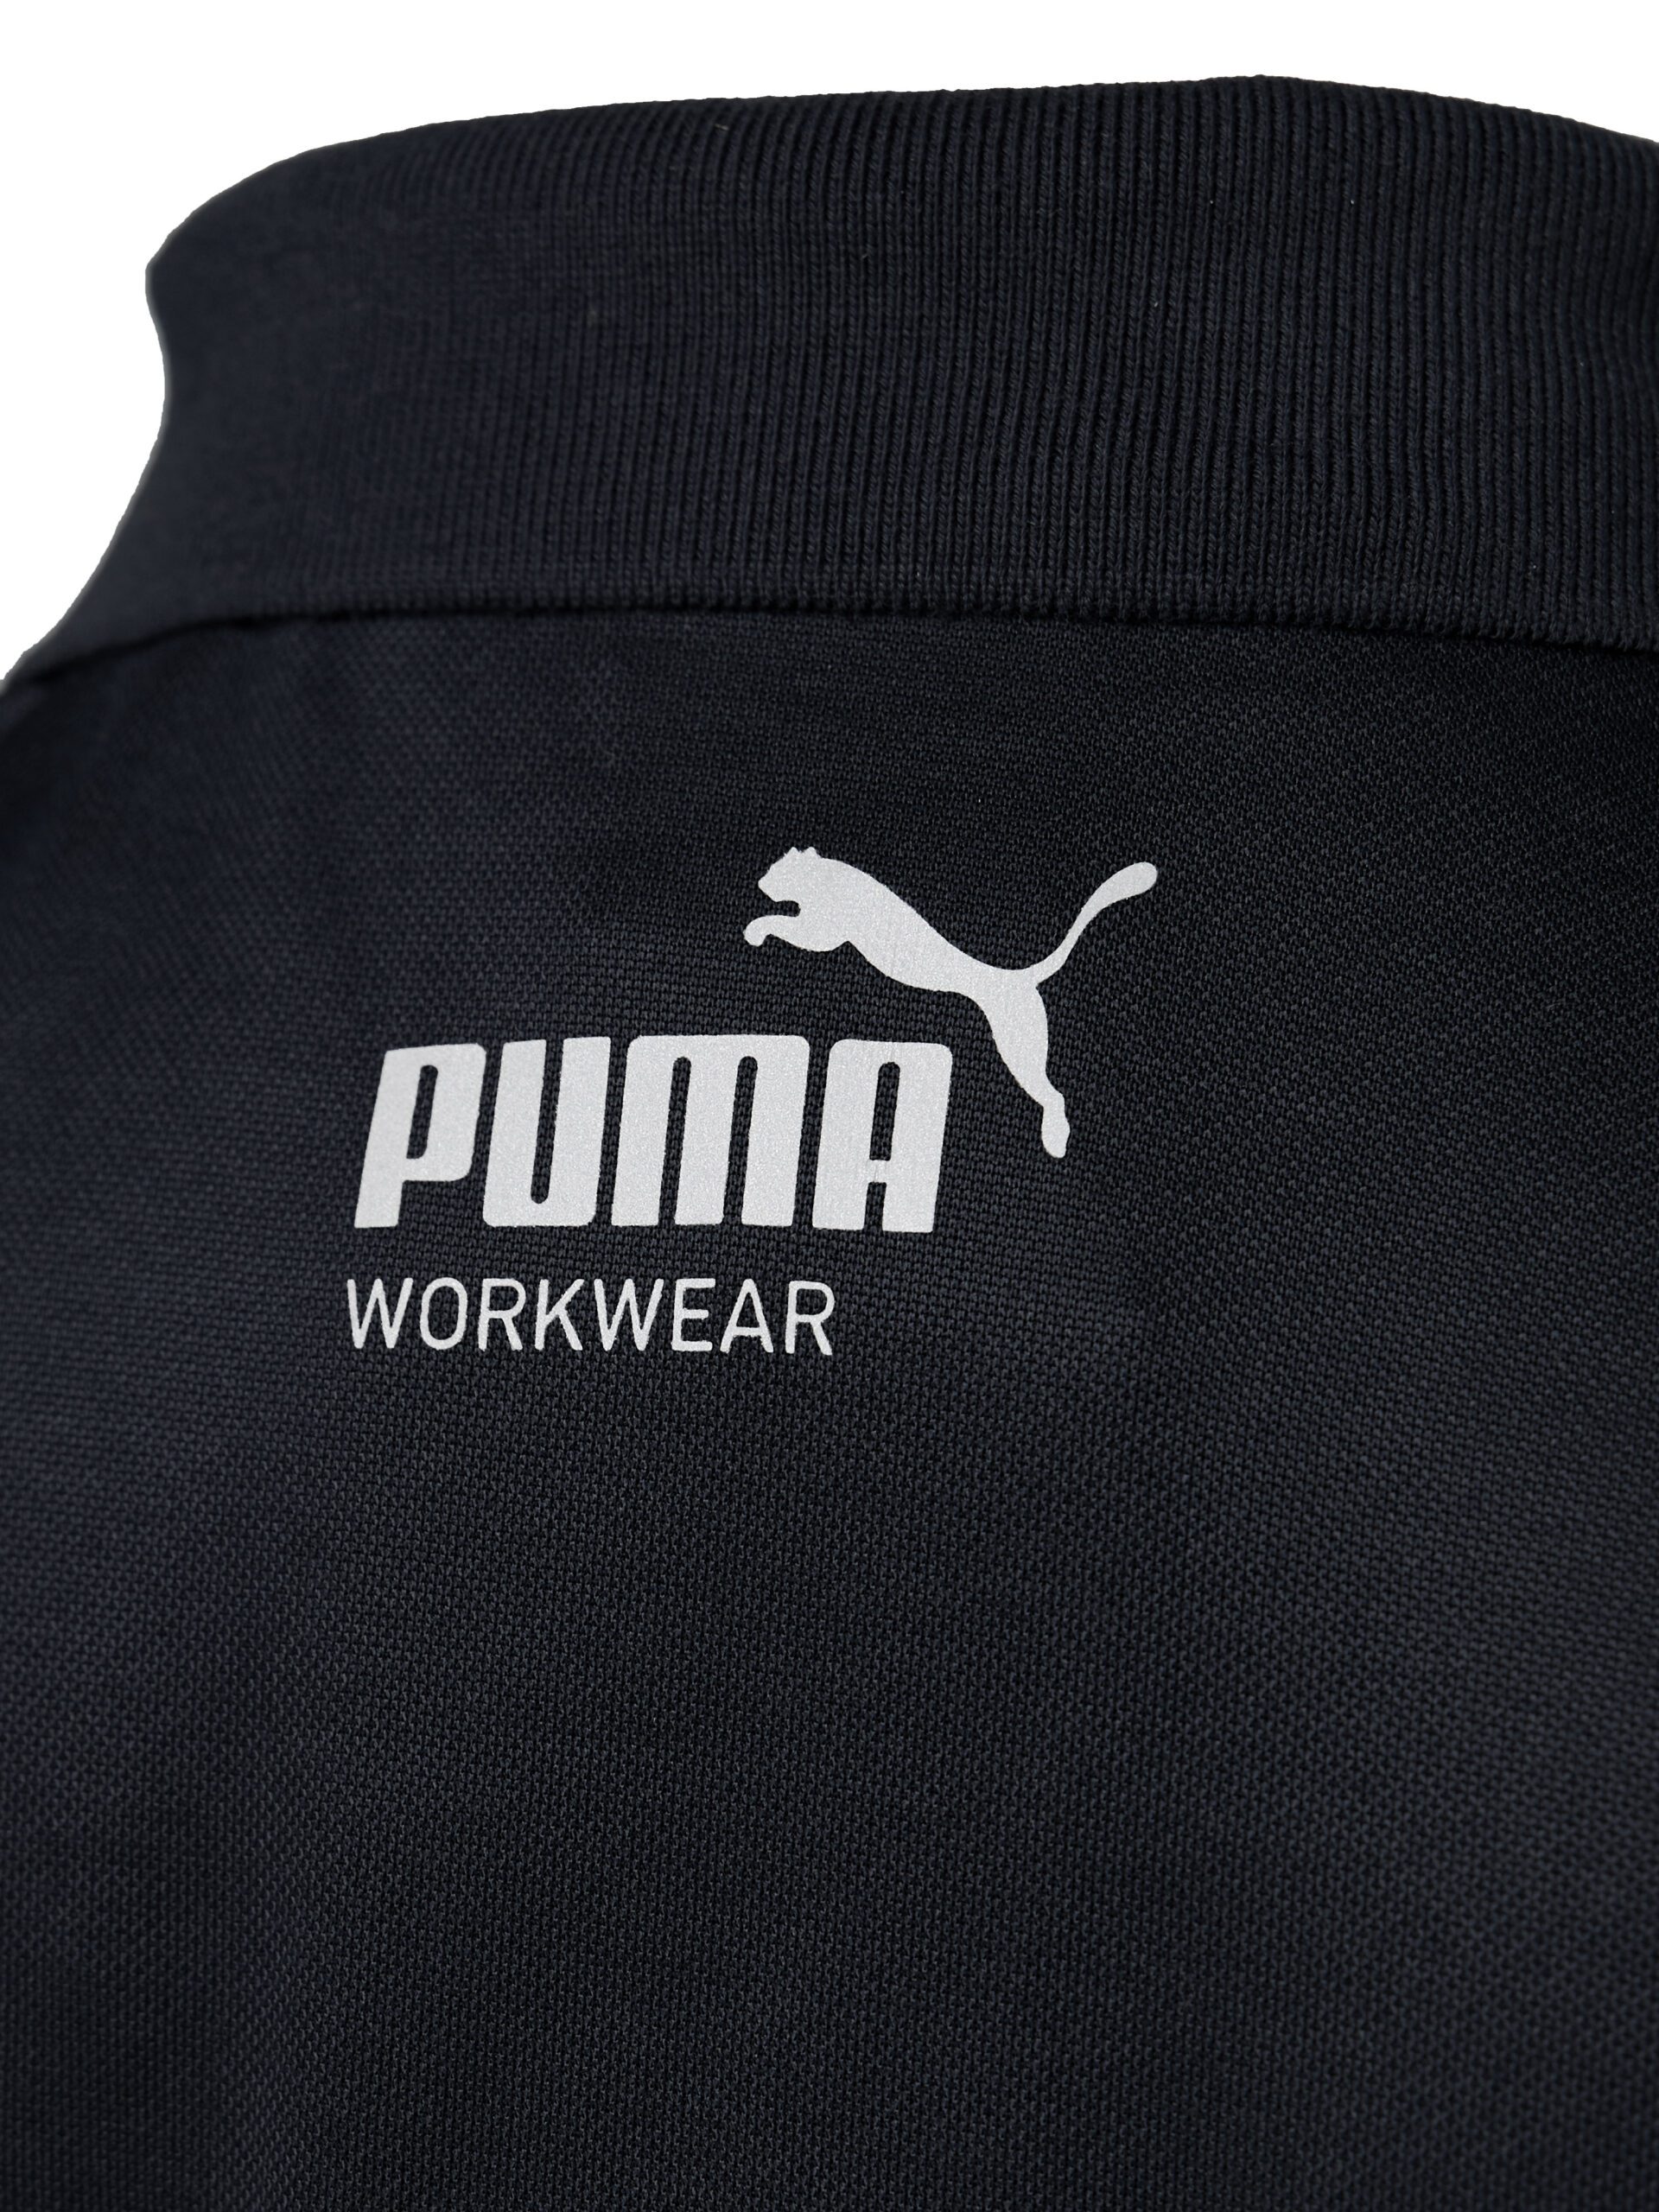 Essentials Workwear PUMA Polo PUMA | Workwear Shirt Men\'s